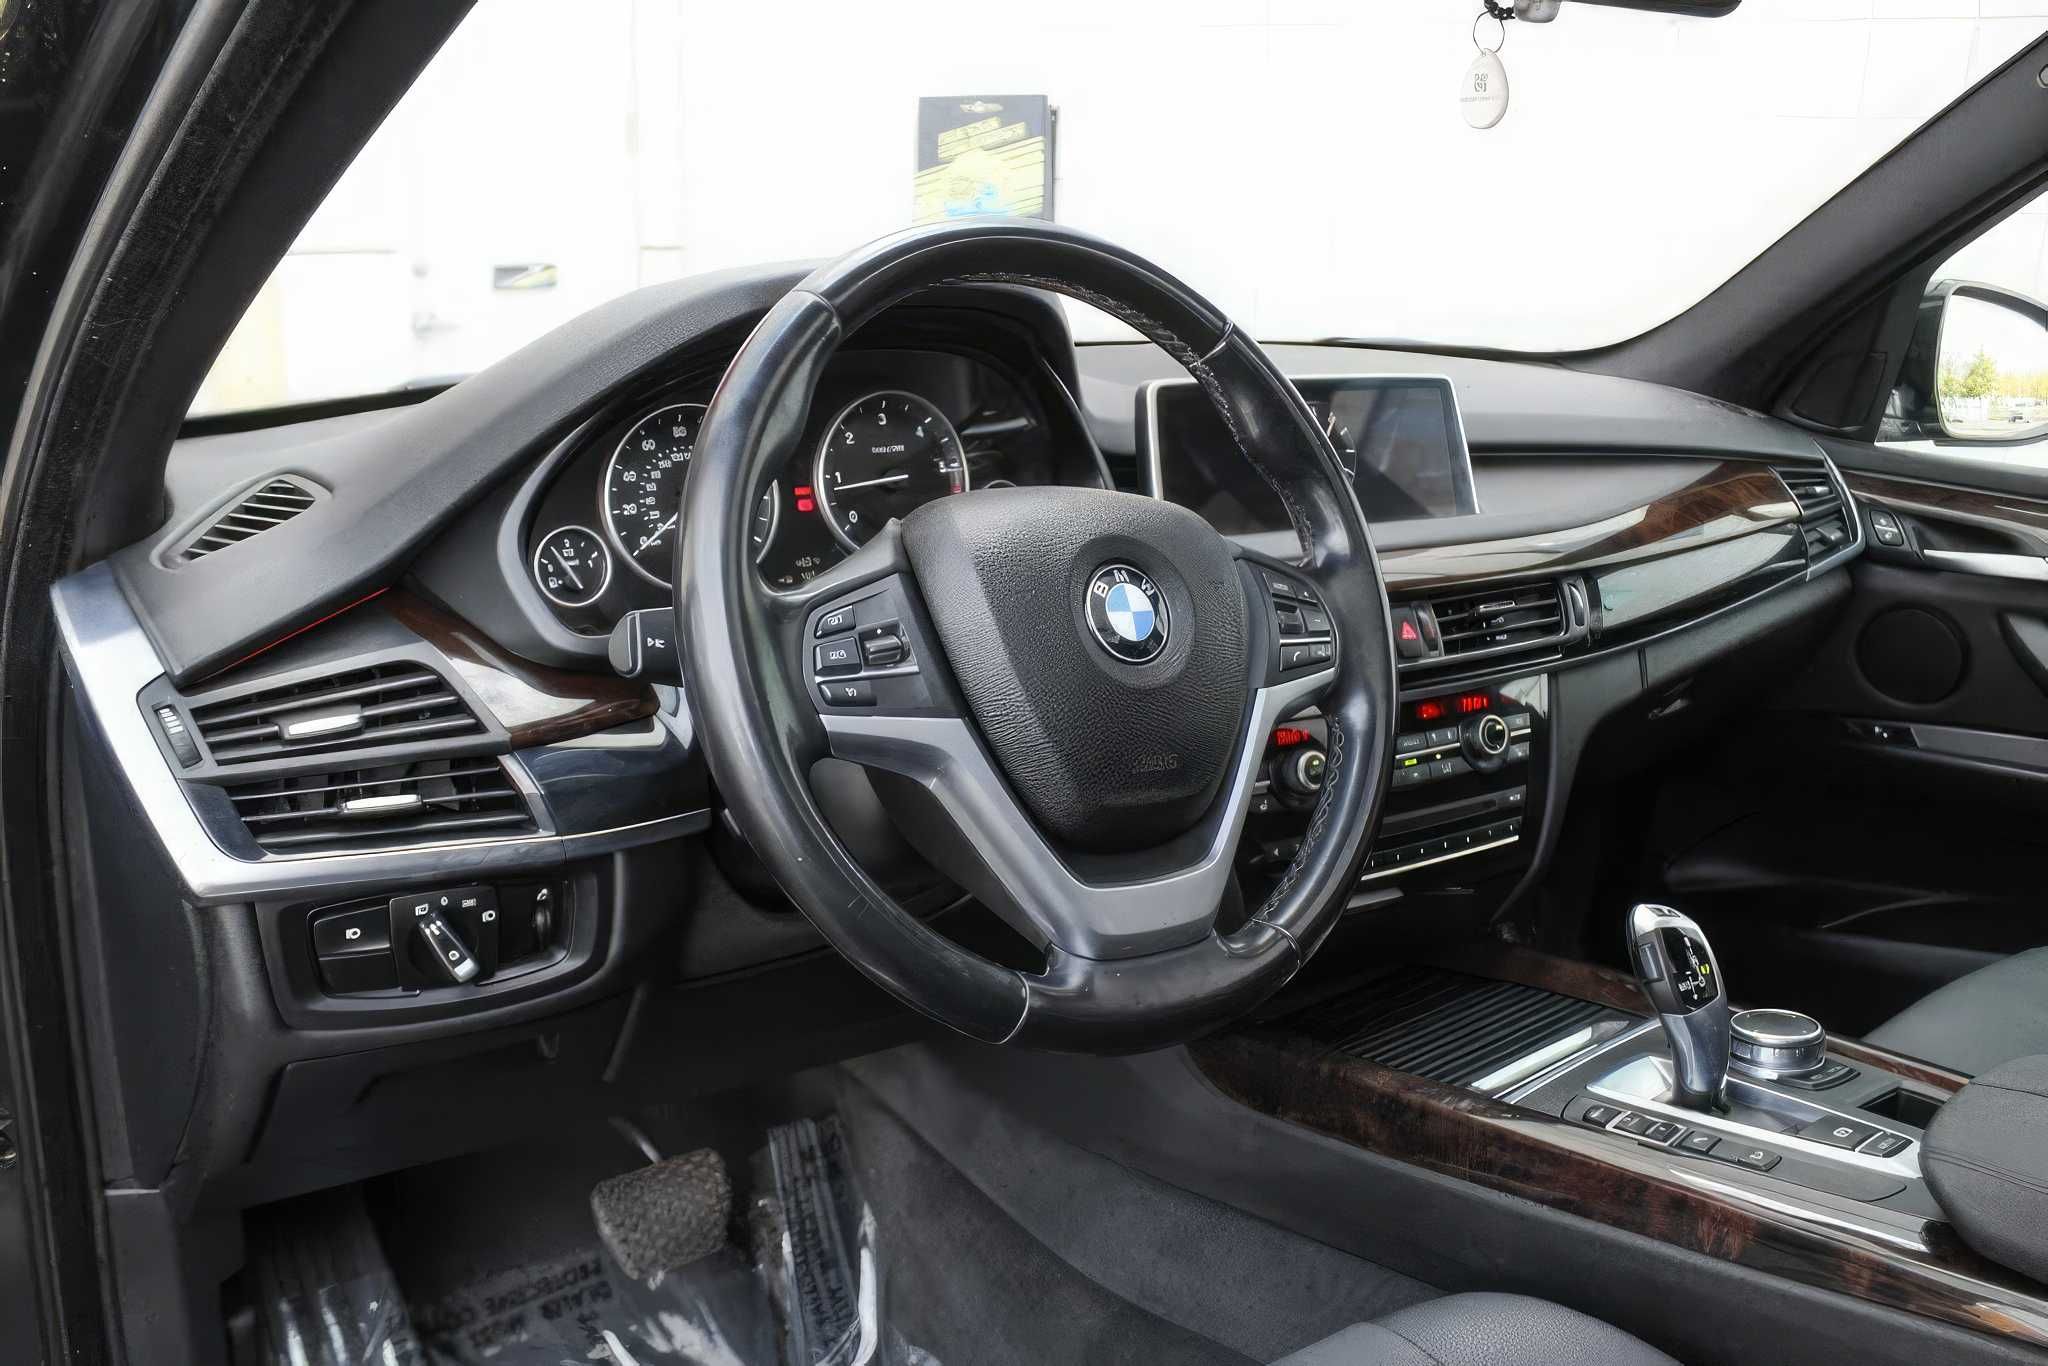 2017 BMW X5 xDrive35d